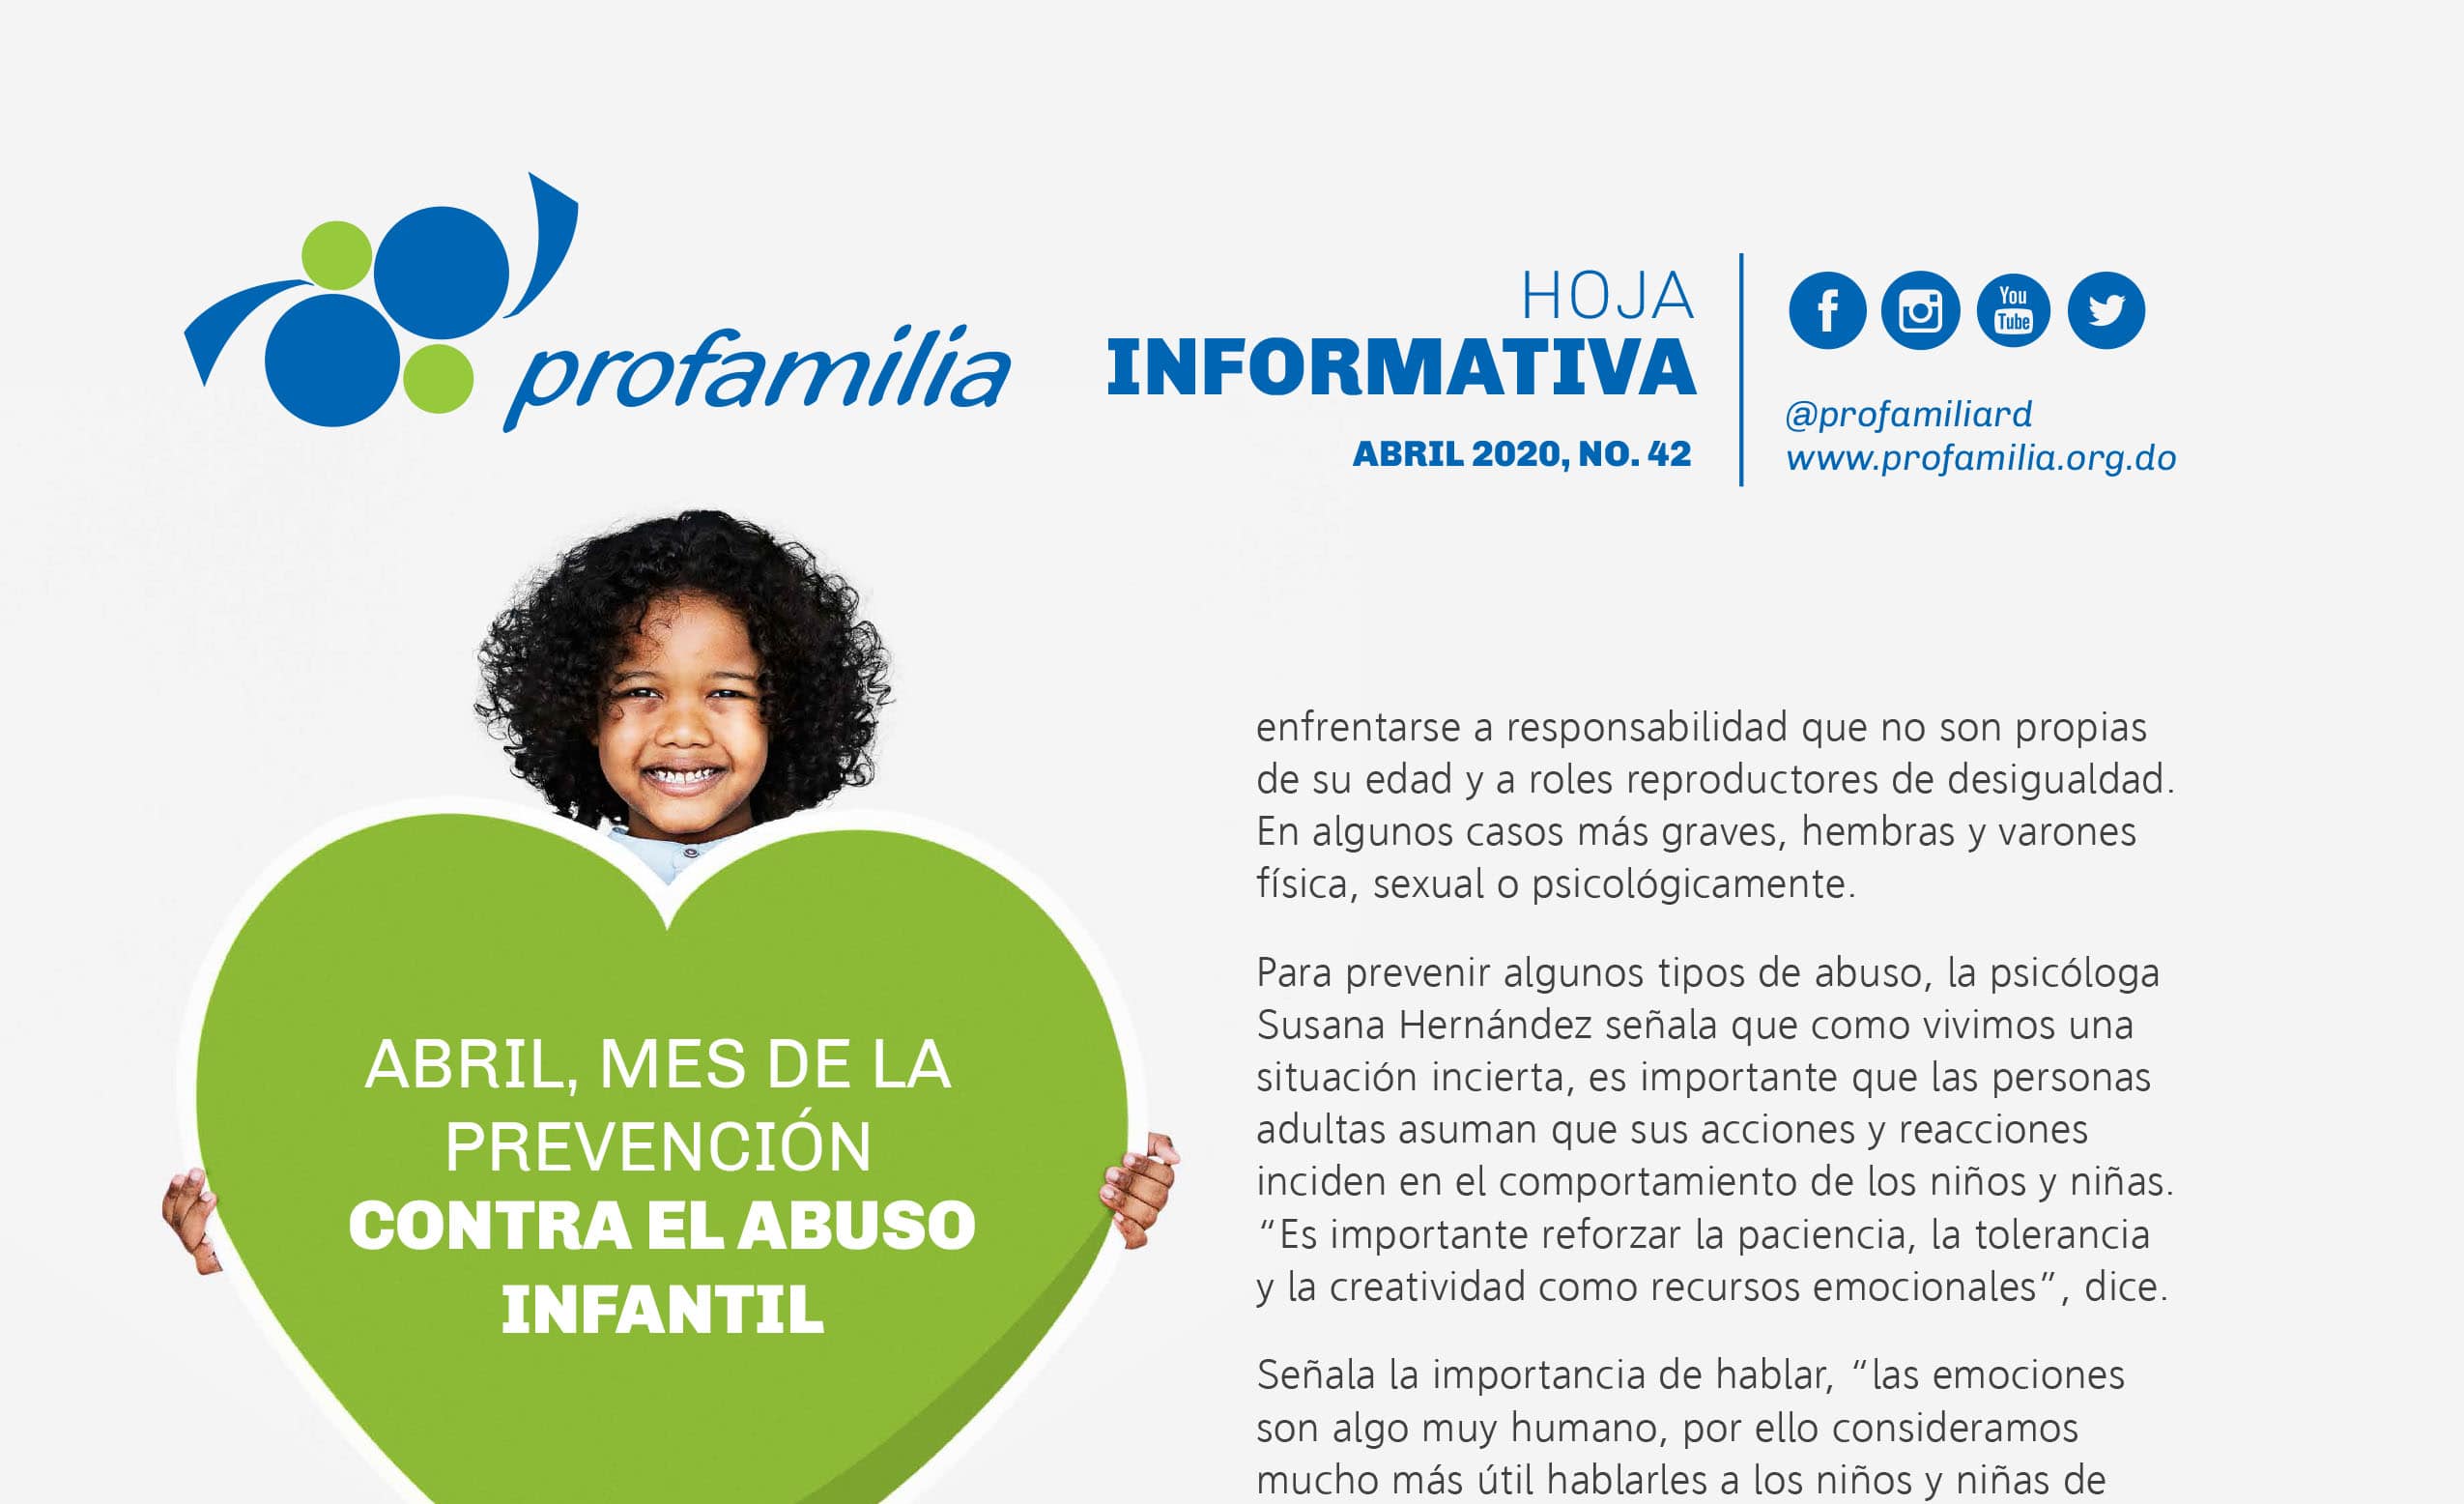 Abril mes de la prevención contra el abuso infantil: Hoja informativa No. 42